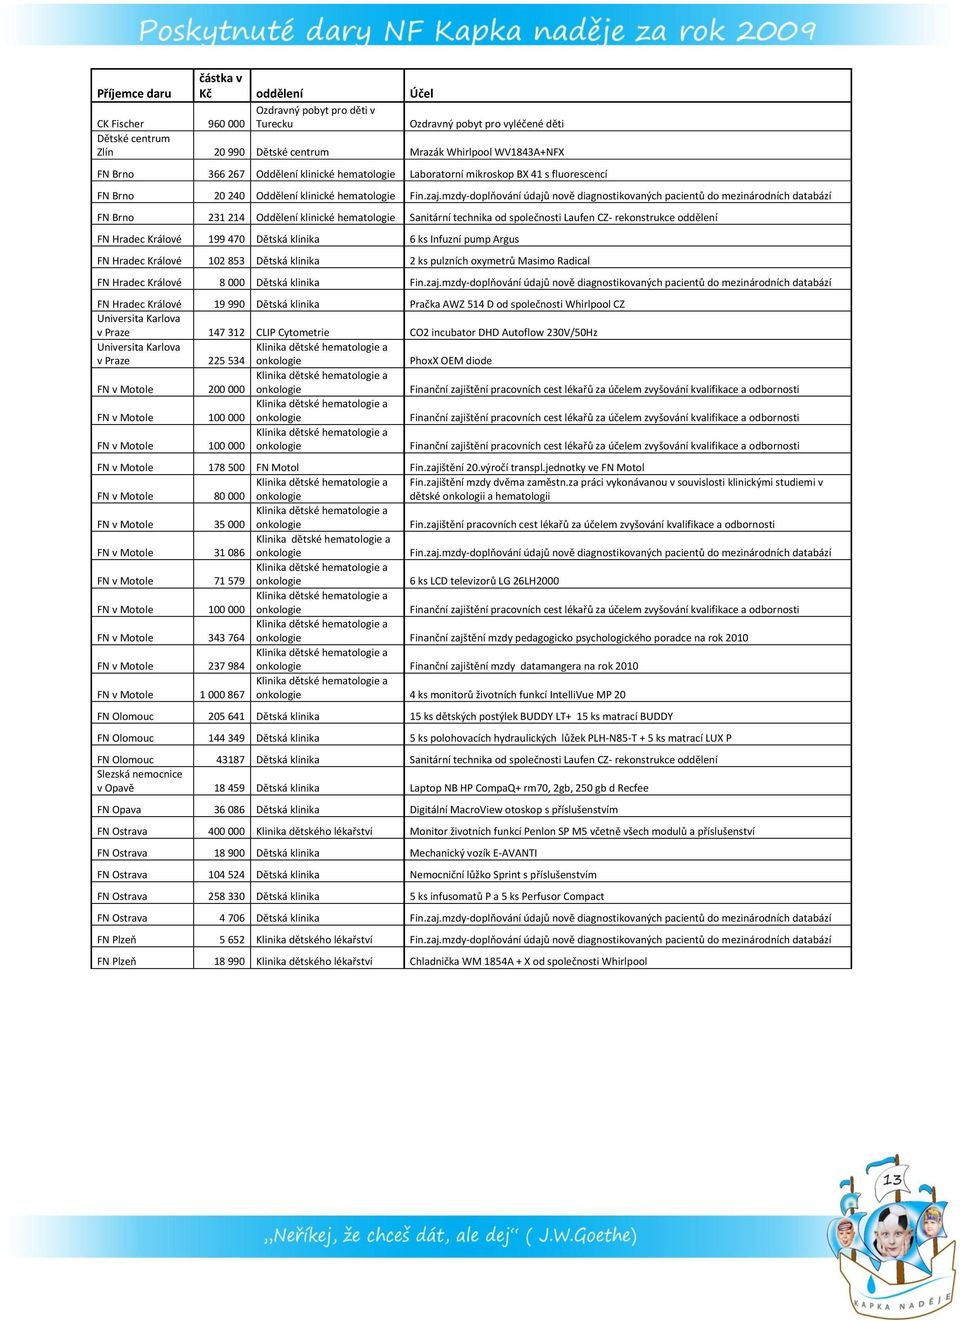 mzdy-doplňování údajů nově diagnostikovaných pacientů do mezinárodních databází FN Brno 231 214 Oddělení klinické hematologie Sanitární technika od společnosti Laufen CZ- rekonstrukce oddělení FN